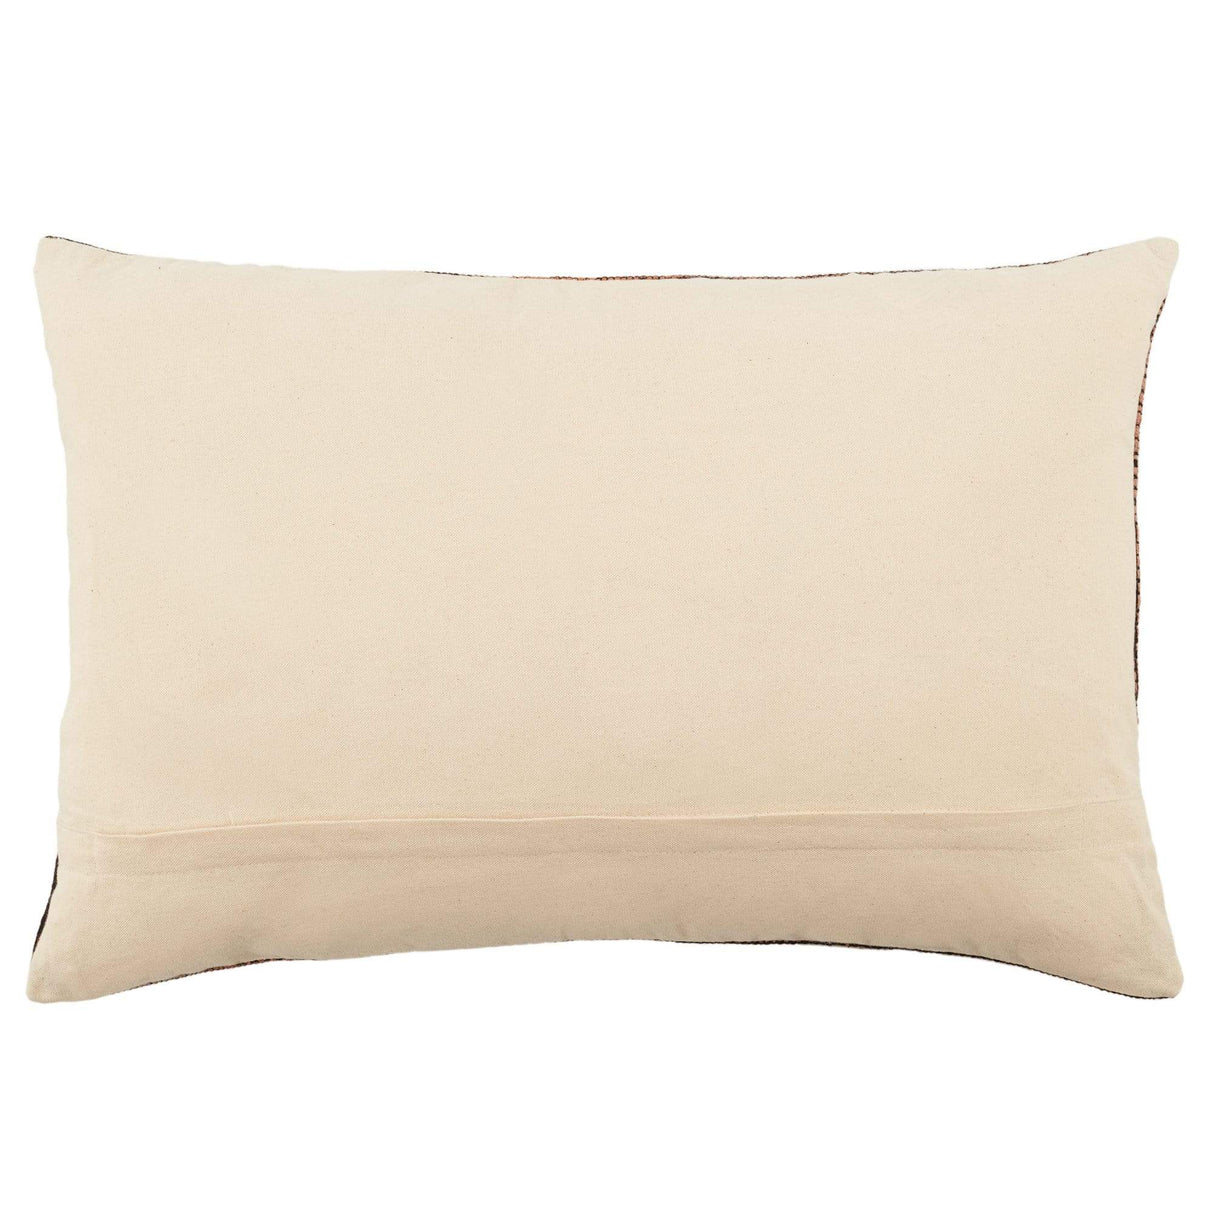 Jaipur Nagaland Lumbar Pillow - Tan/Black Pillow & Decor